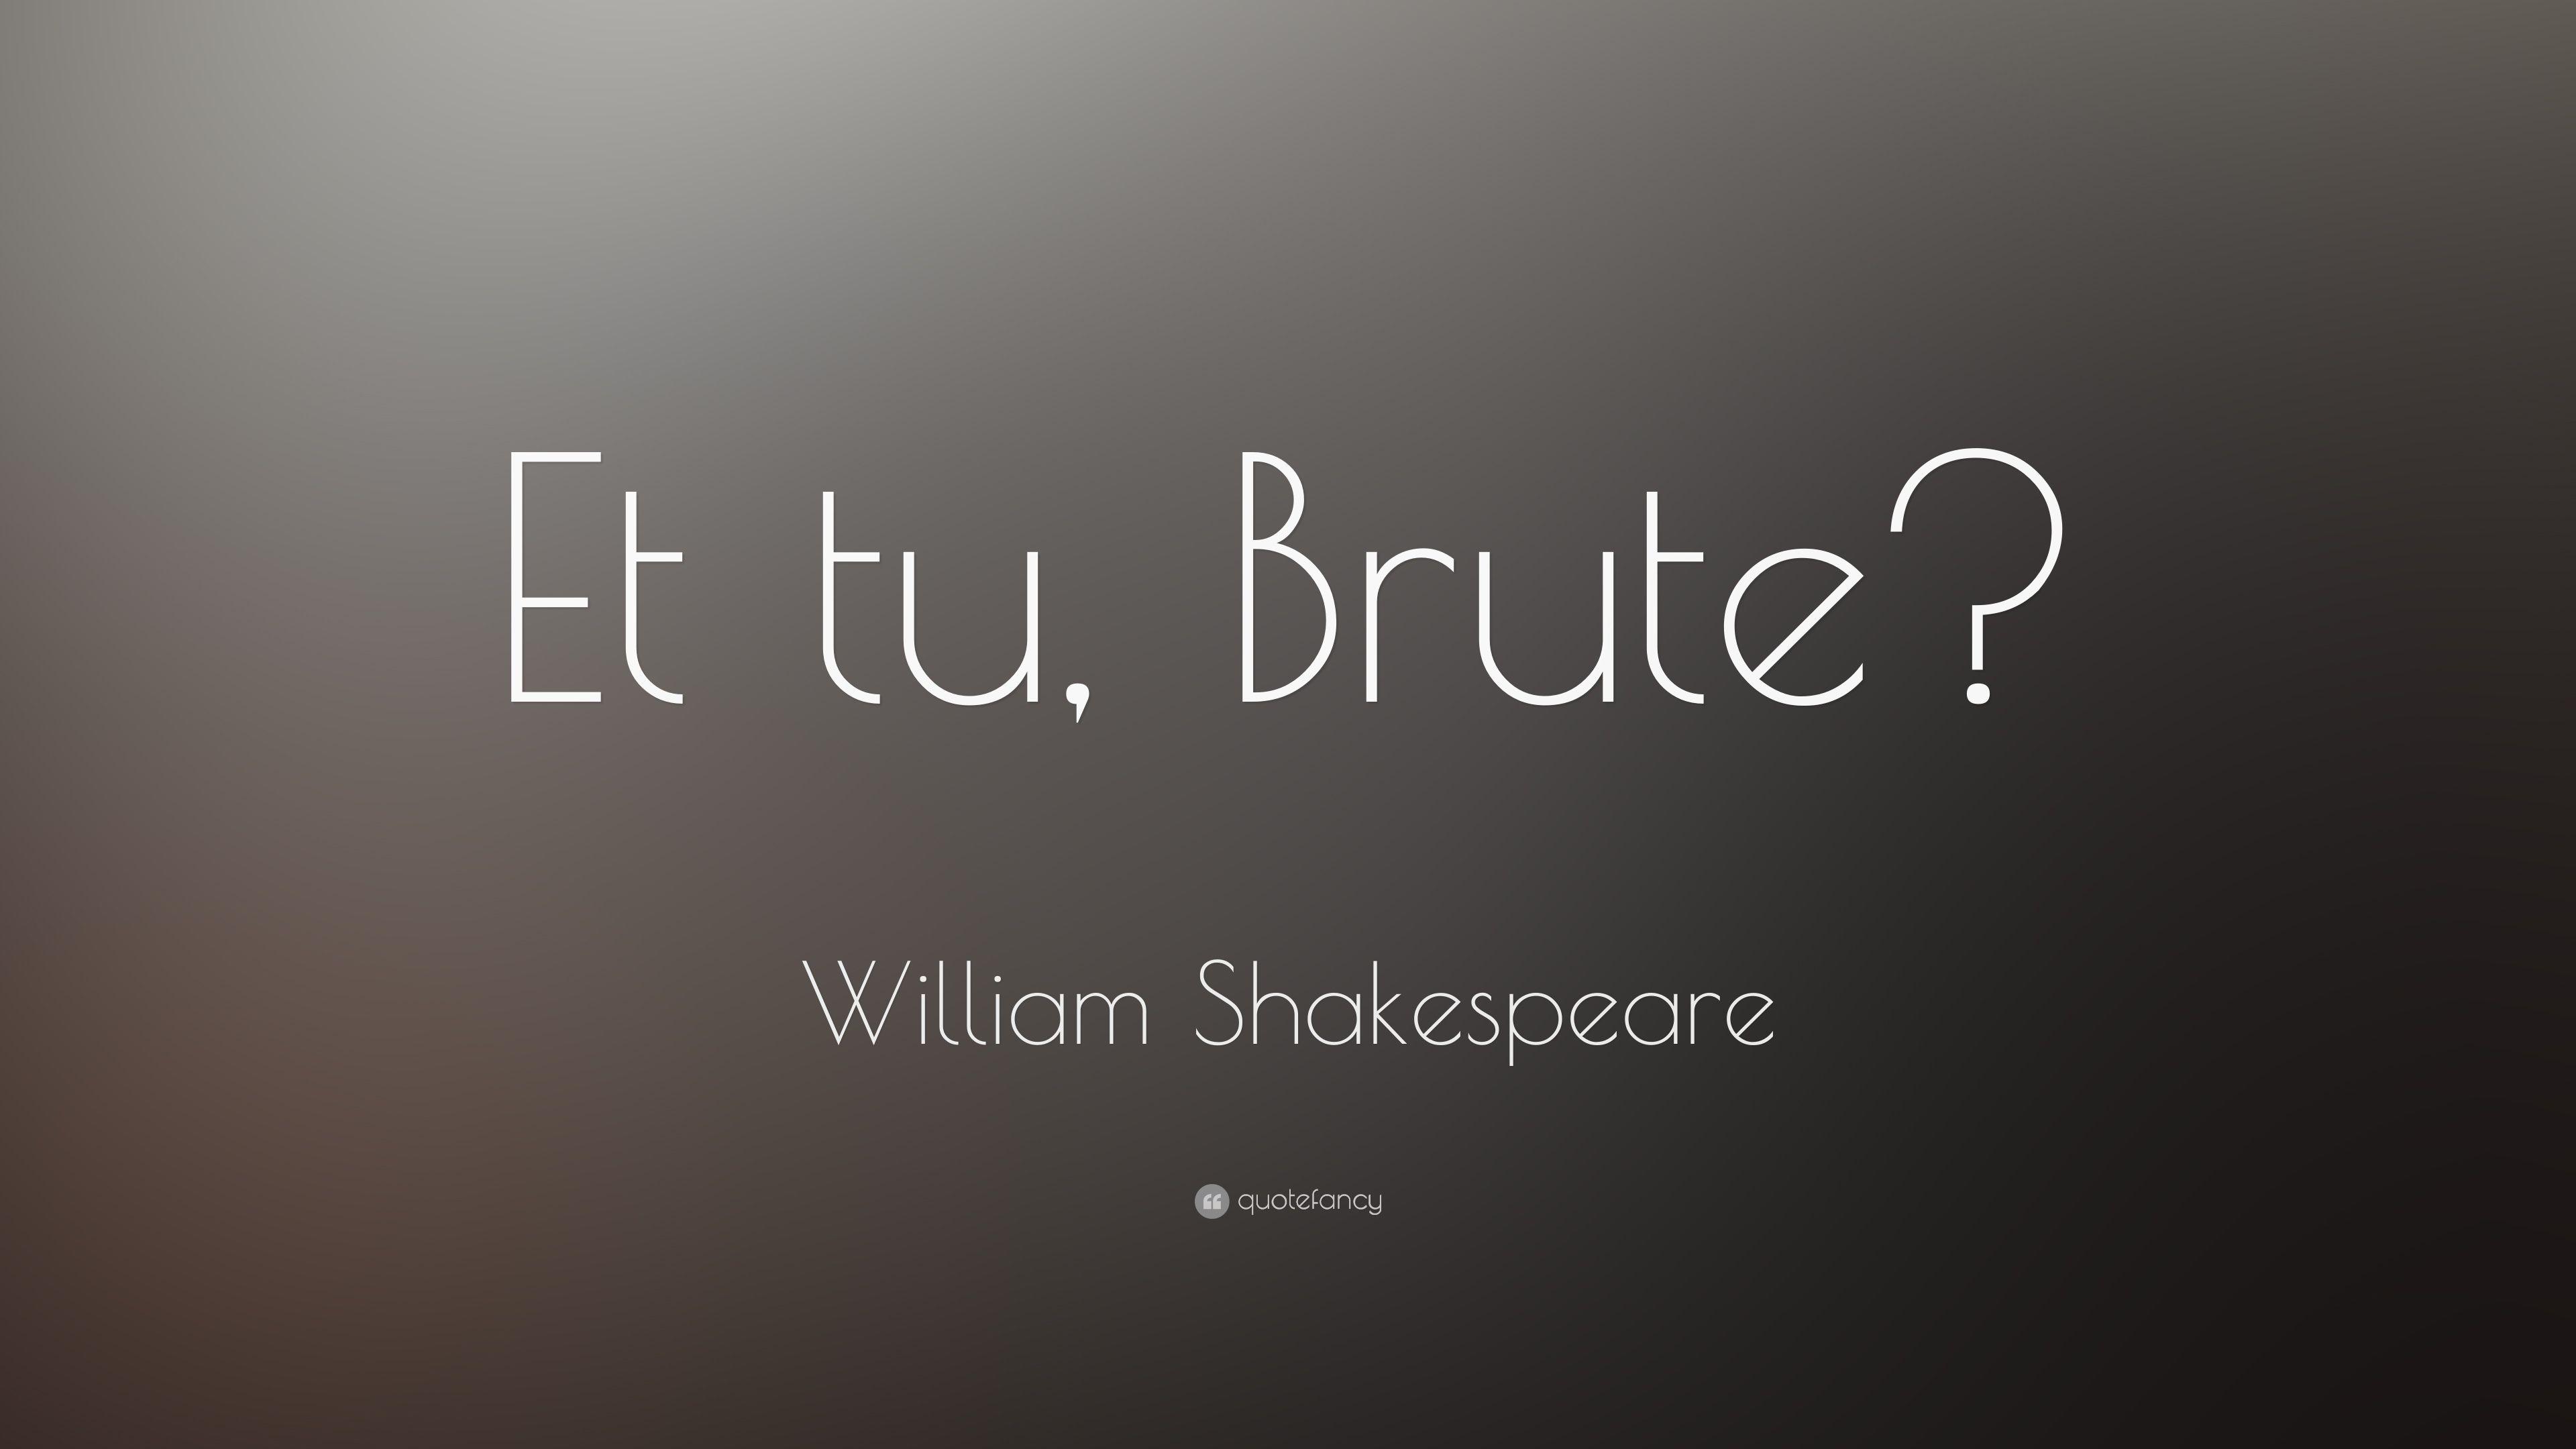 William Shakespeare Quote: “Et tu, Brute?” (16 wallpaper)